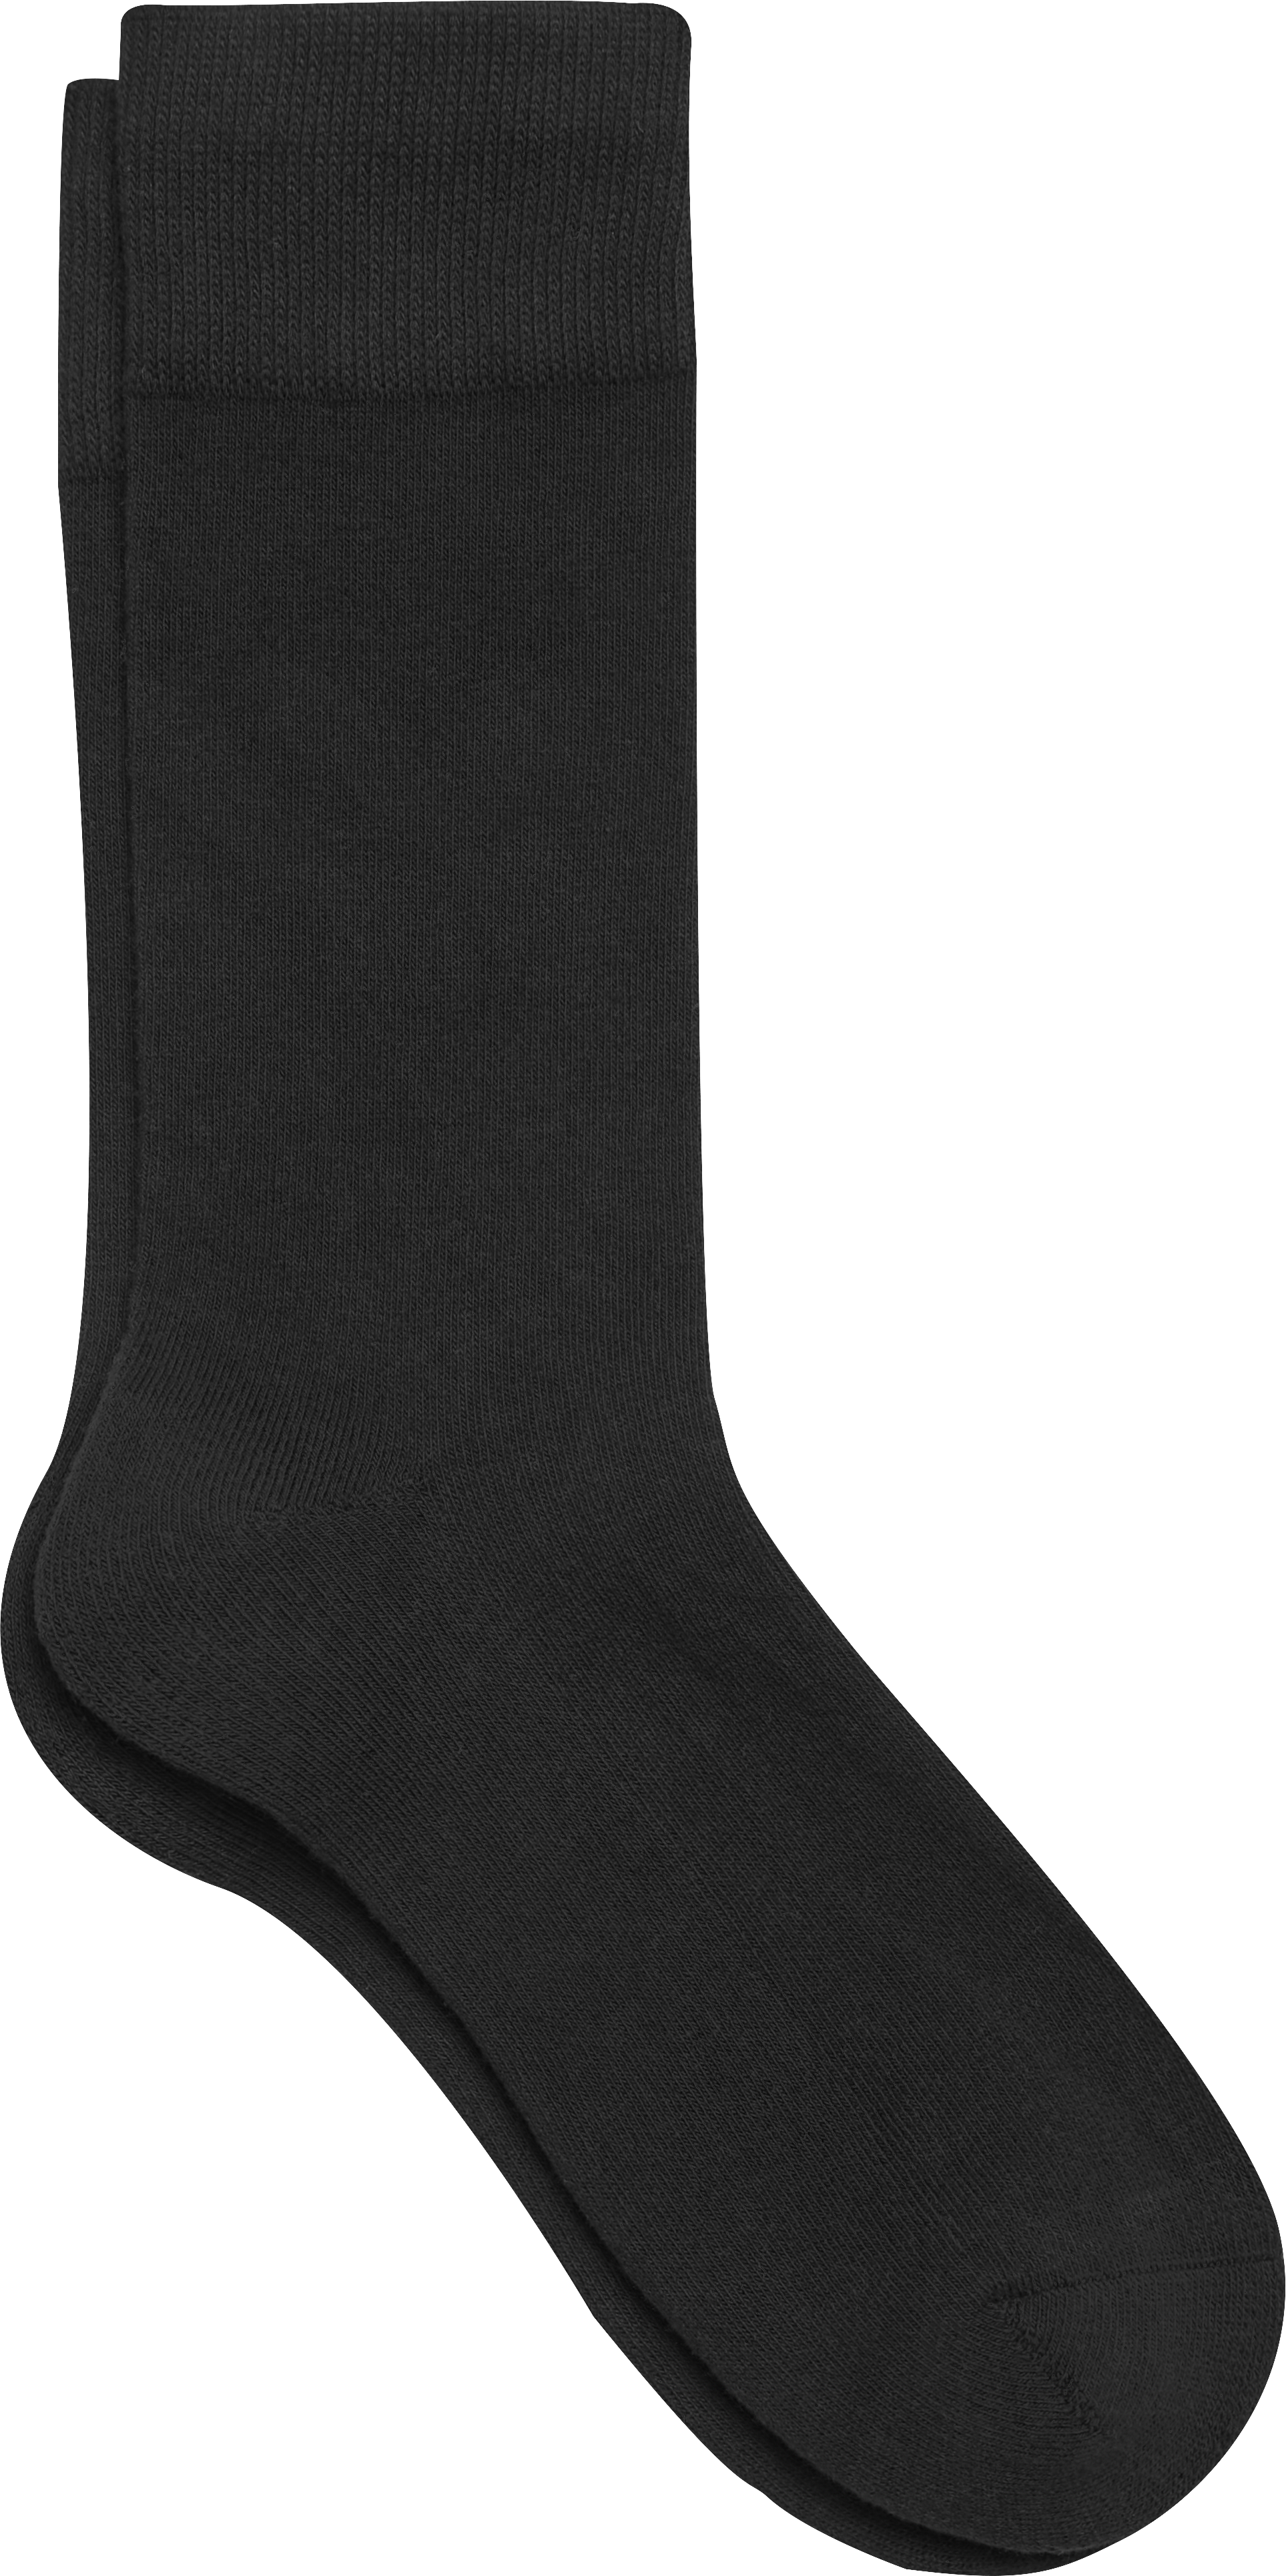 Men's Socks - Dress Socks & Packs | Men's Wearhouse